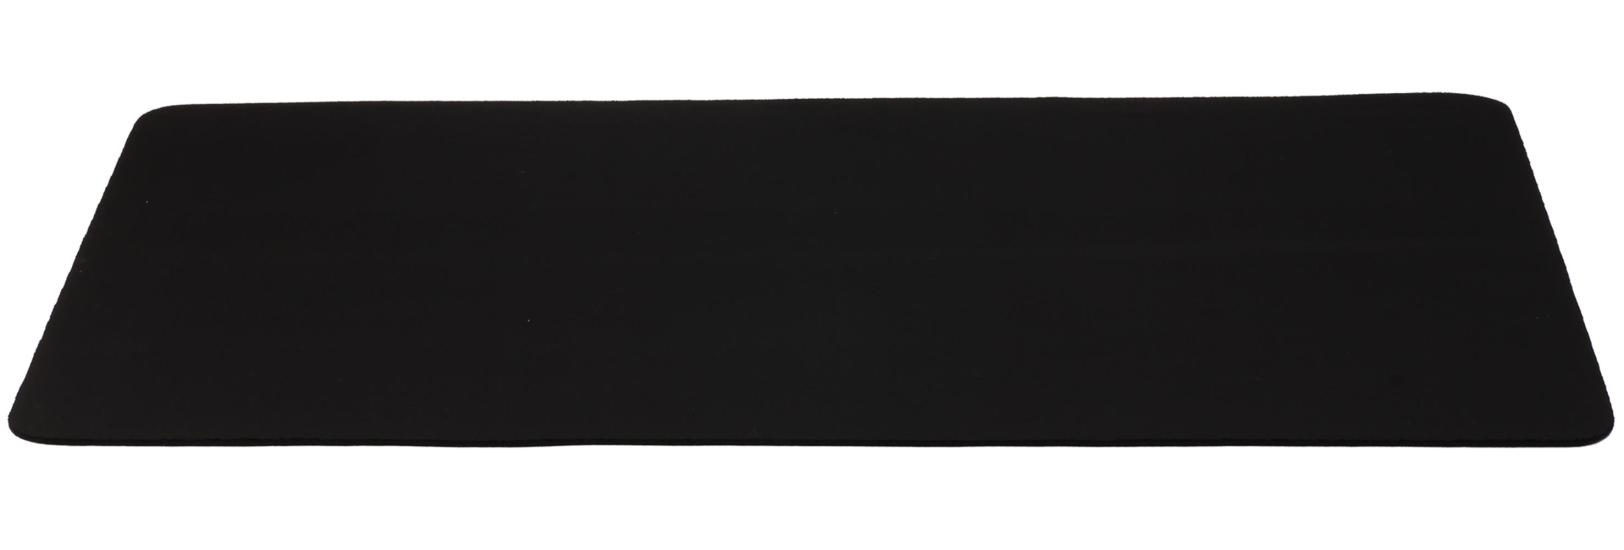 Elba 600 Siyah Mouse Pad (600-350-2)